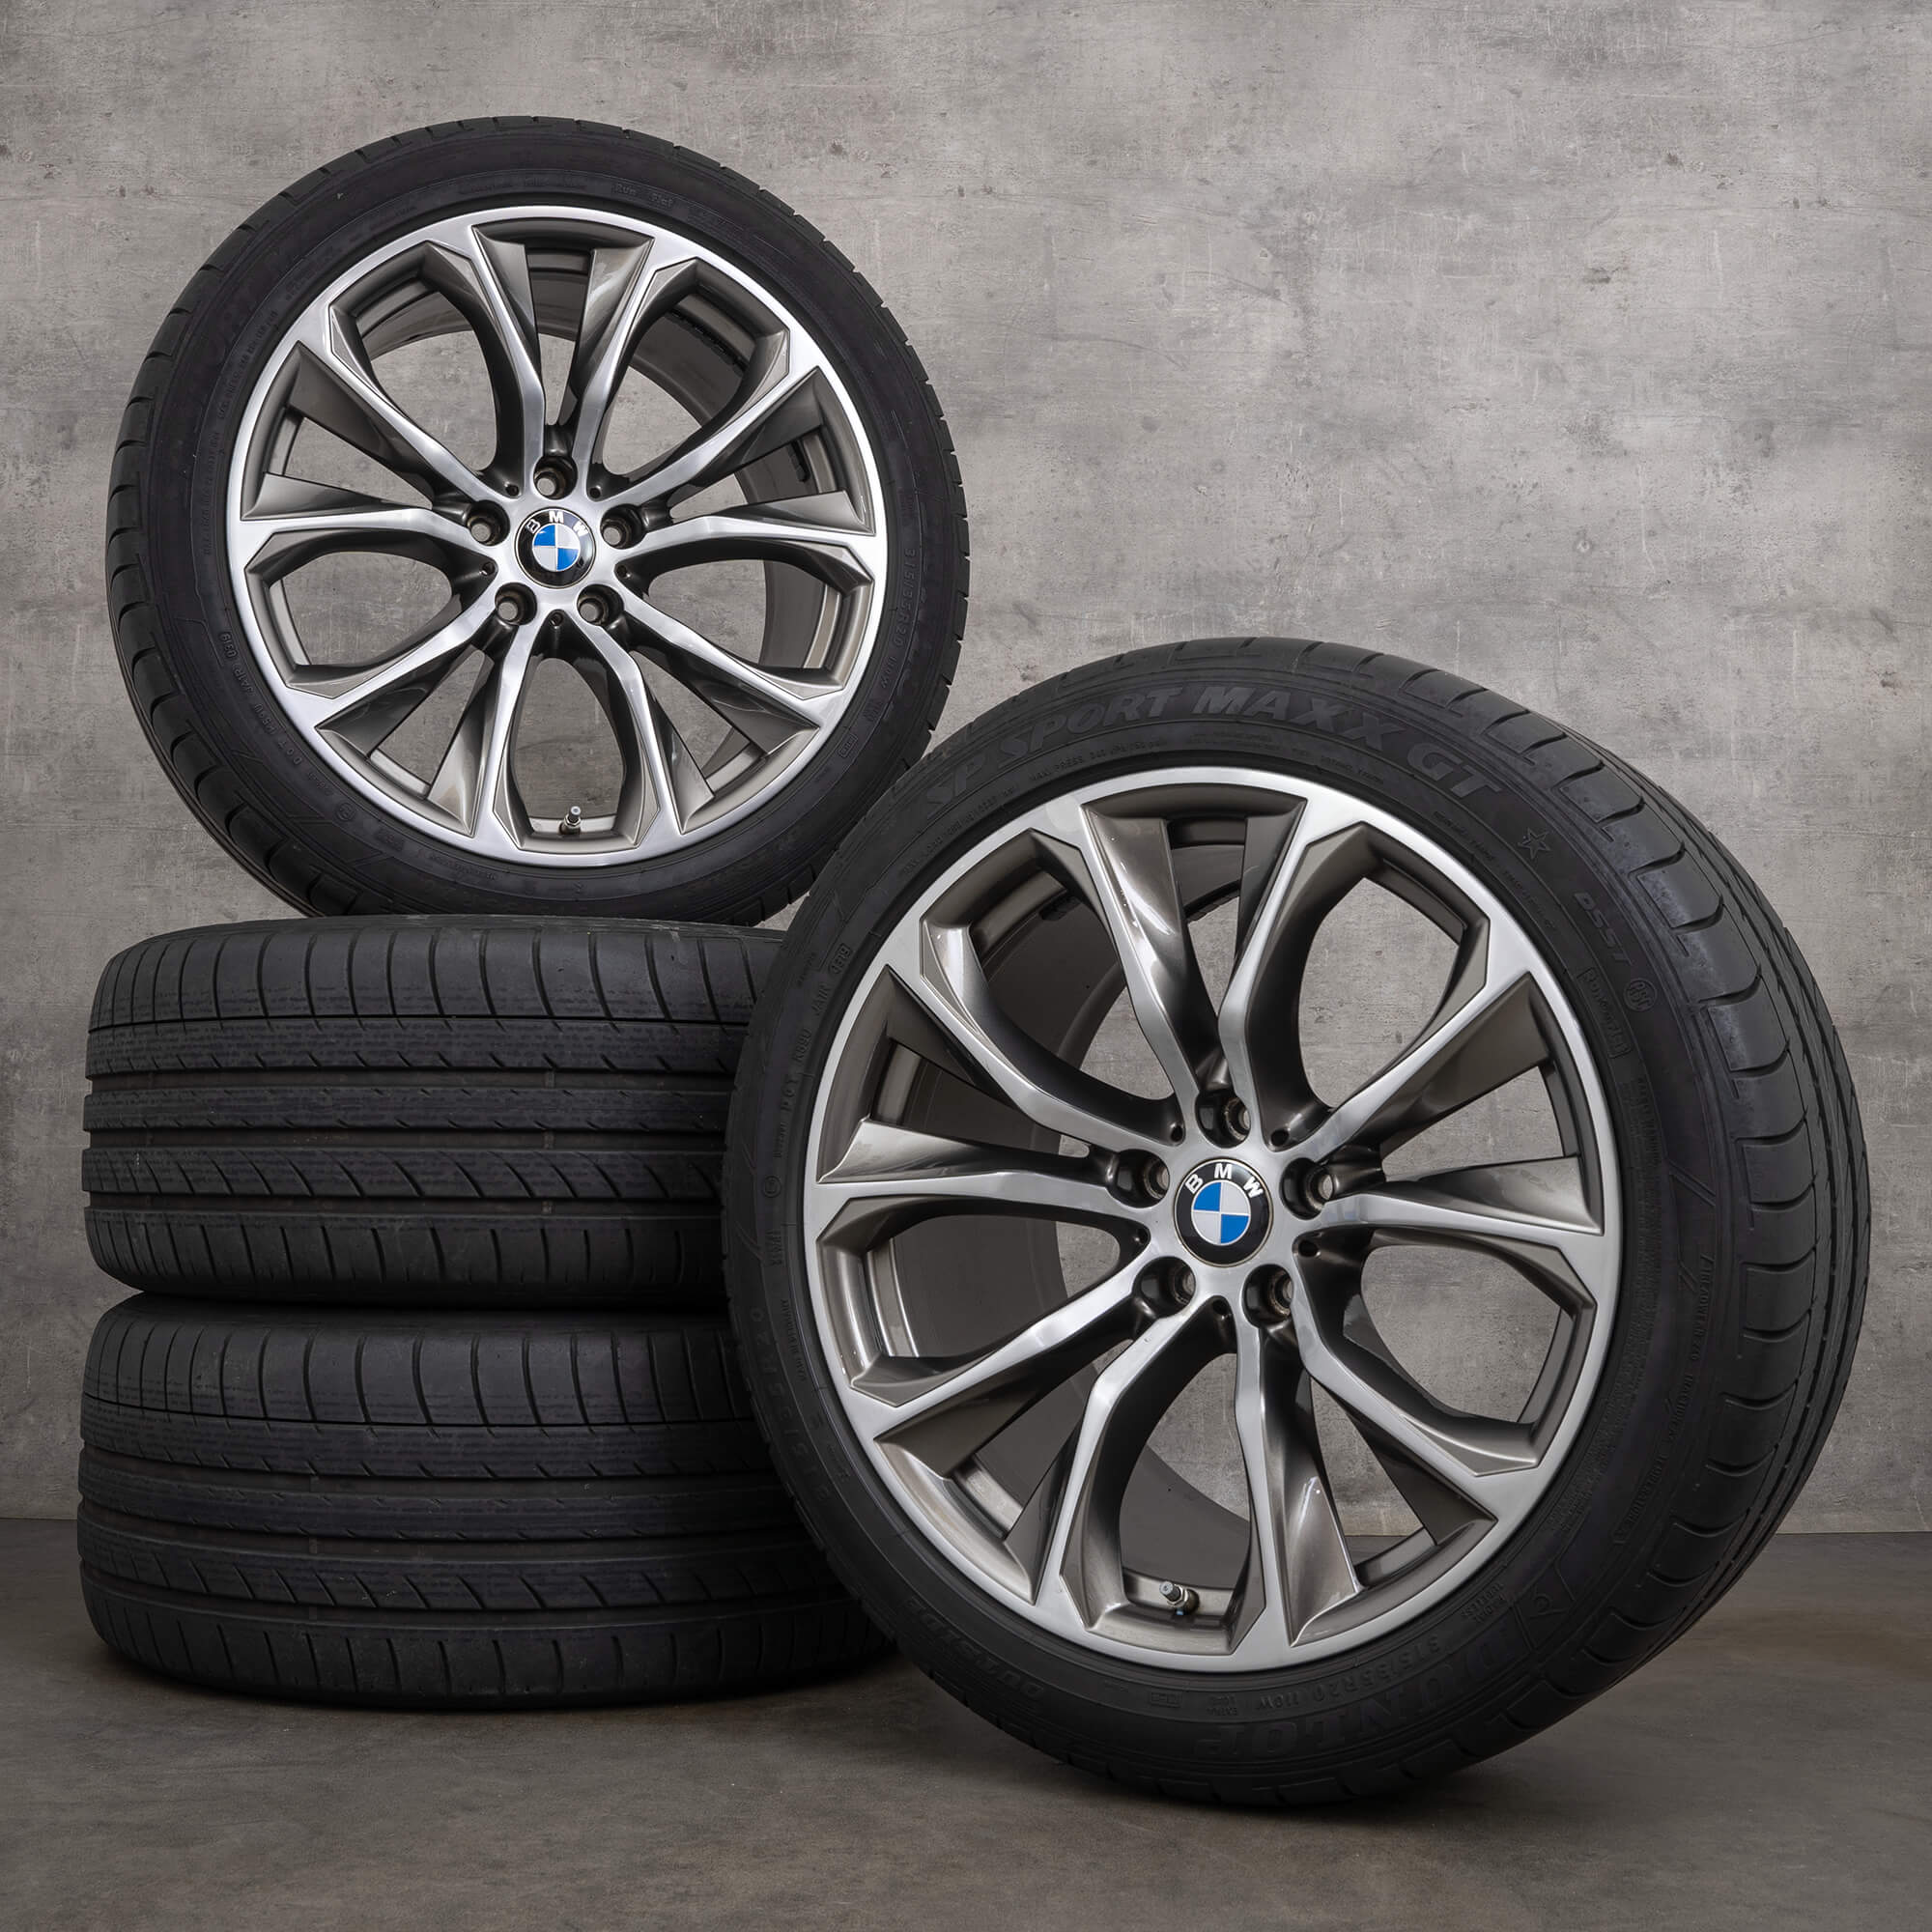 Cerchi in alluminio BMW da 20 pollici X5 F15 E70 X6 F16 cerchi estivi pneumatici